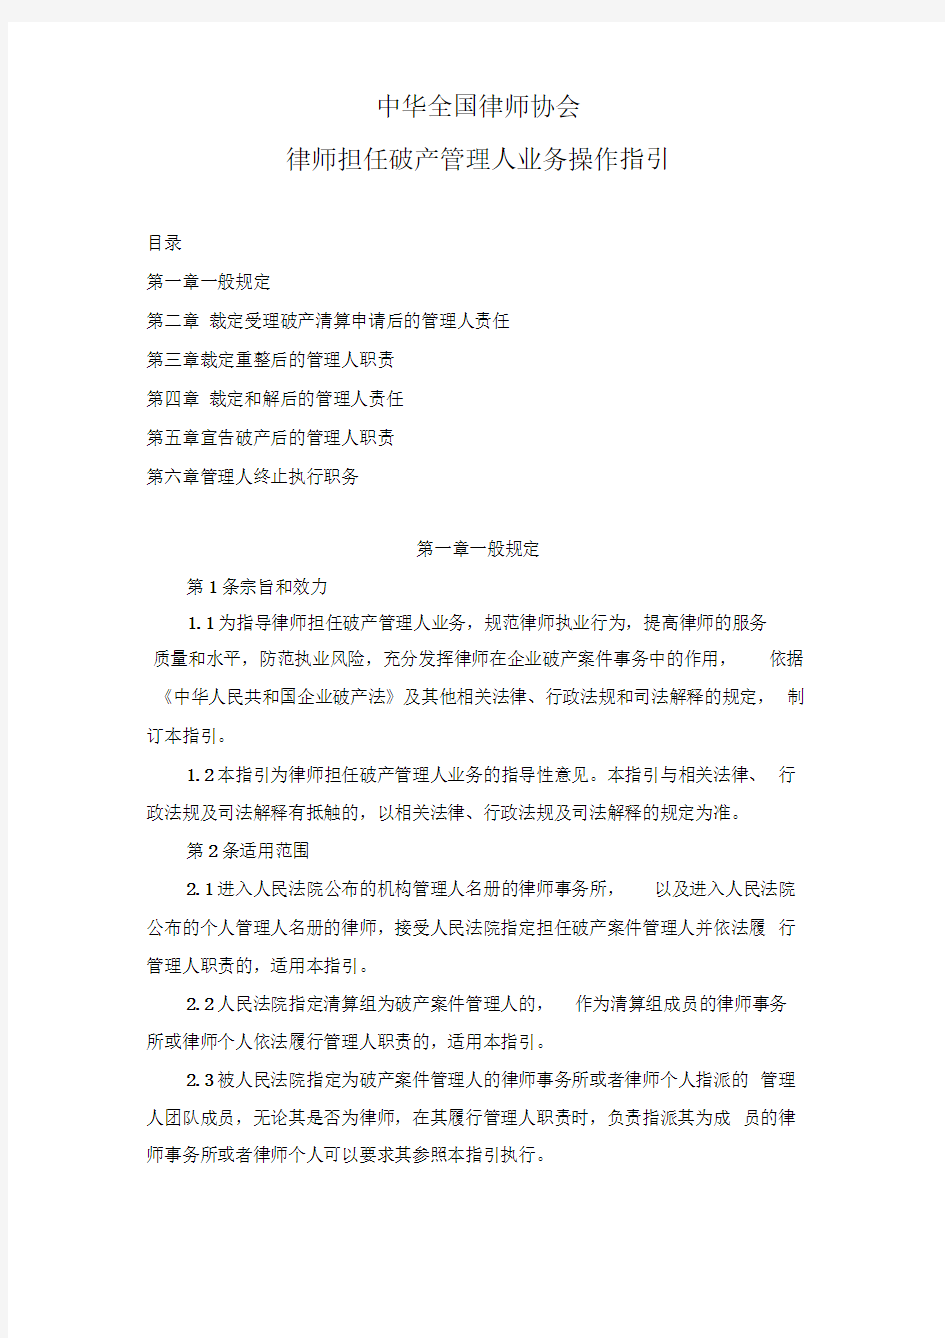 中华全国律师协会律师担任破产管理人业务操作指引